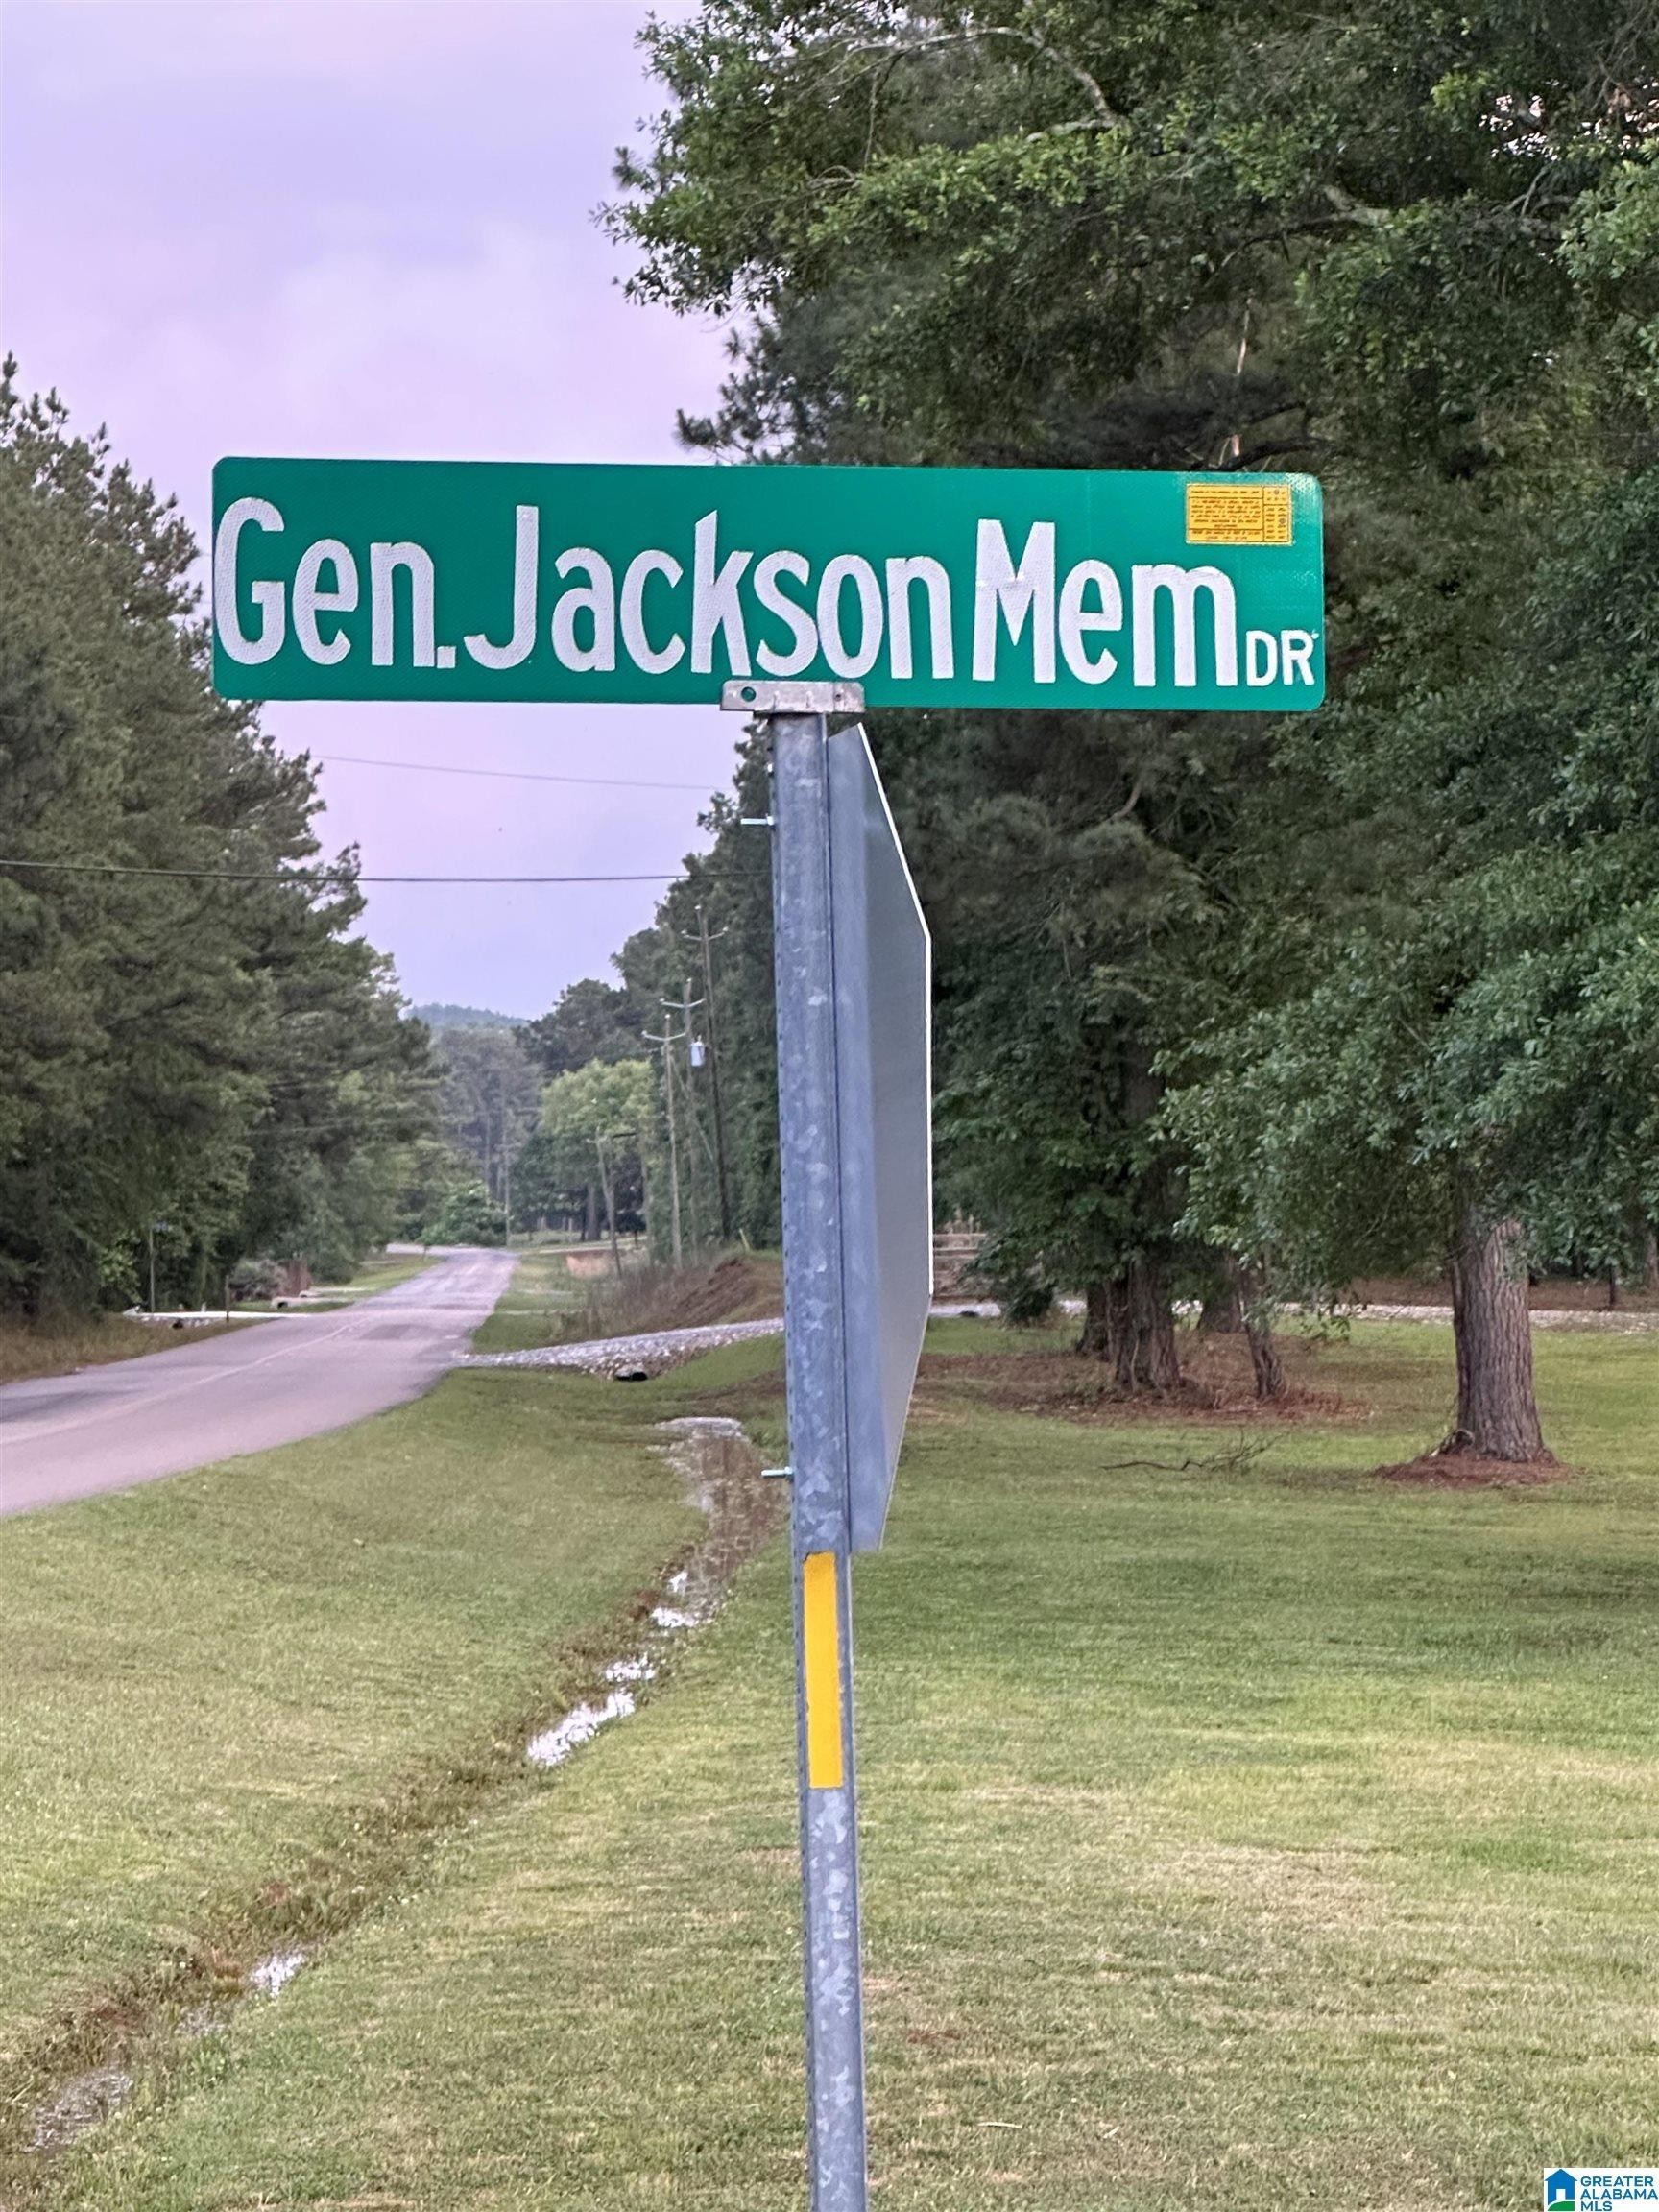 2. General Jackson Memorial Drive